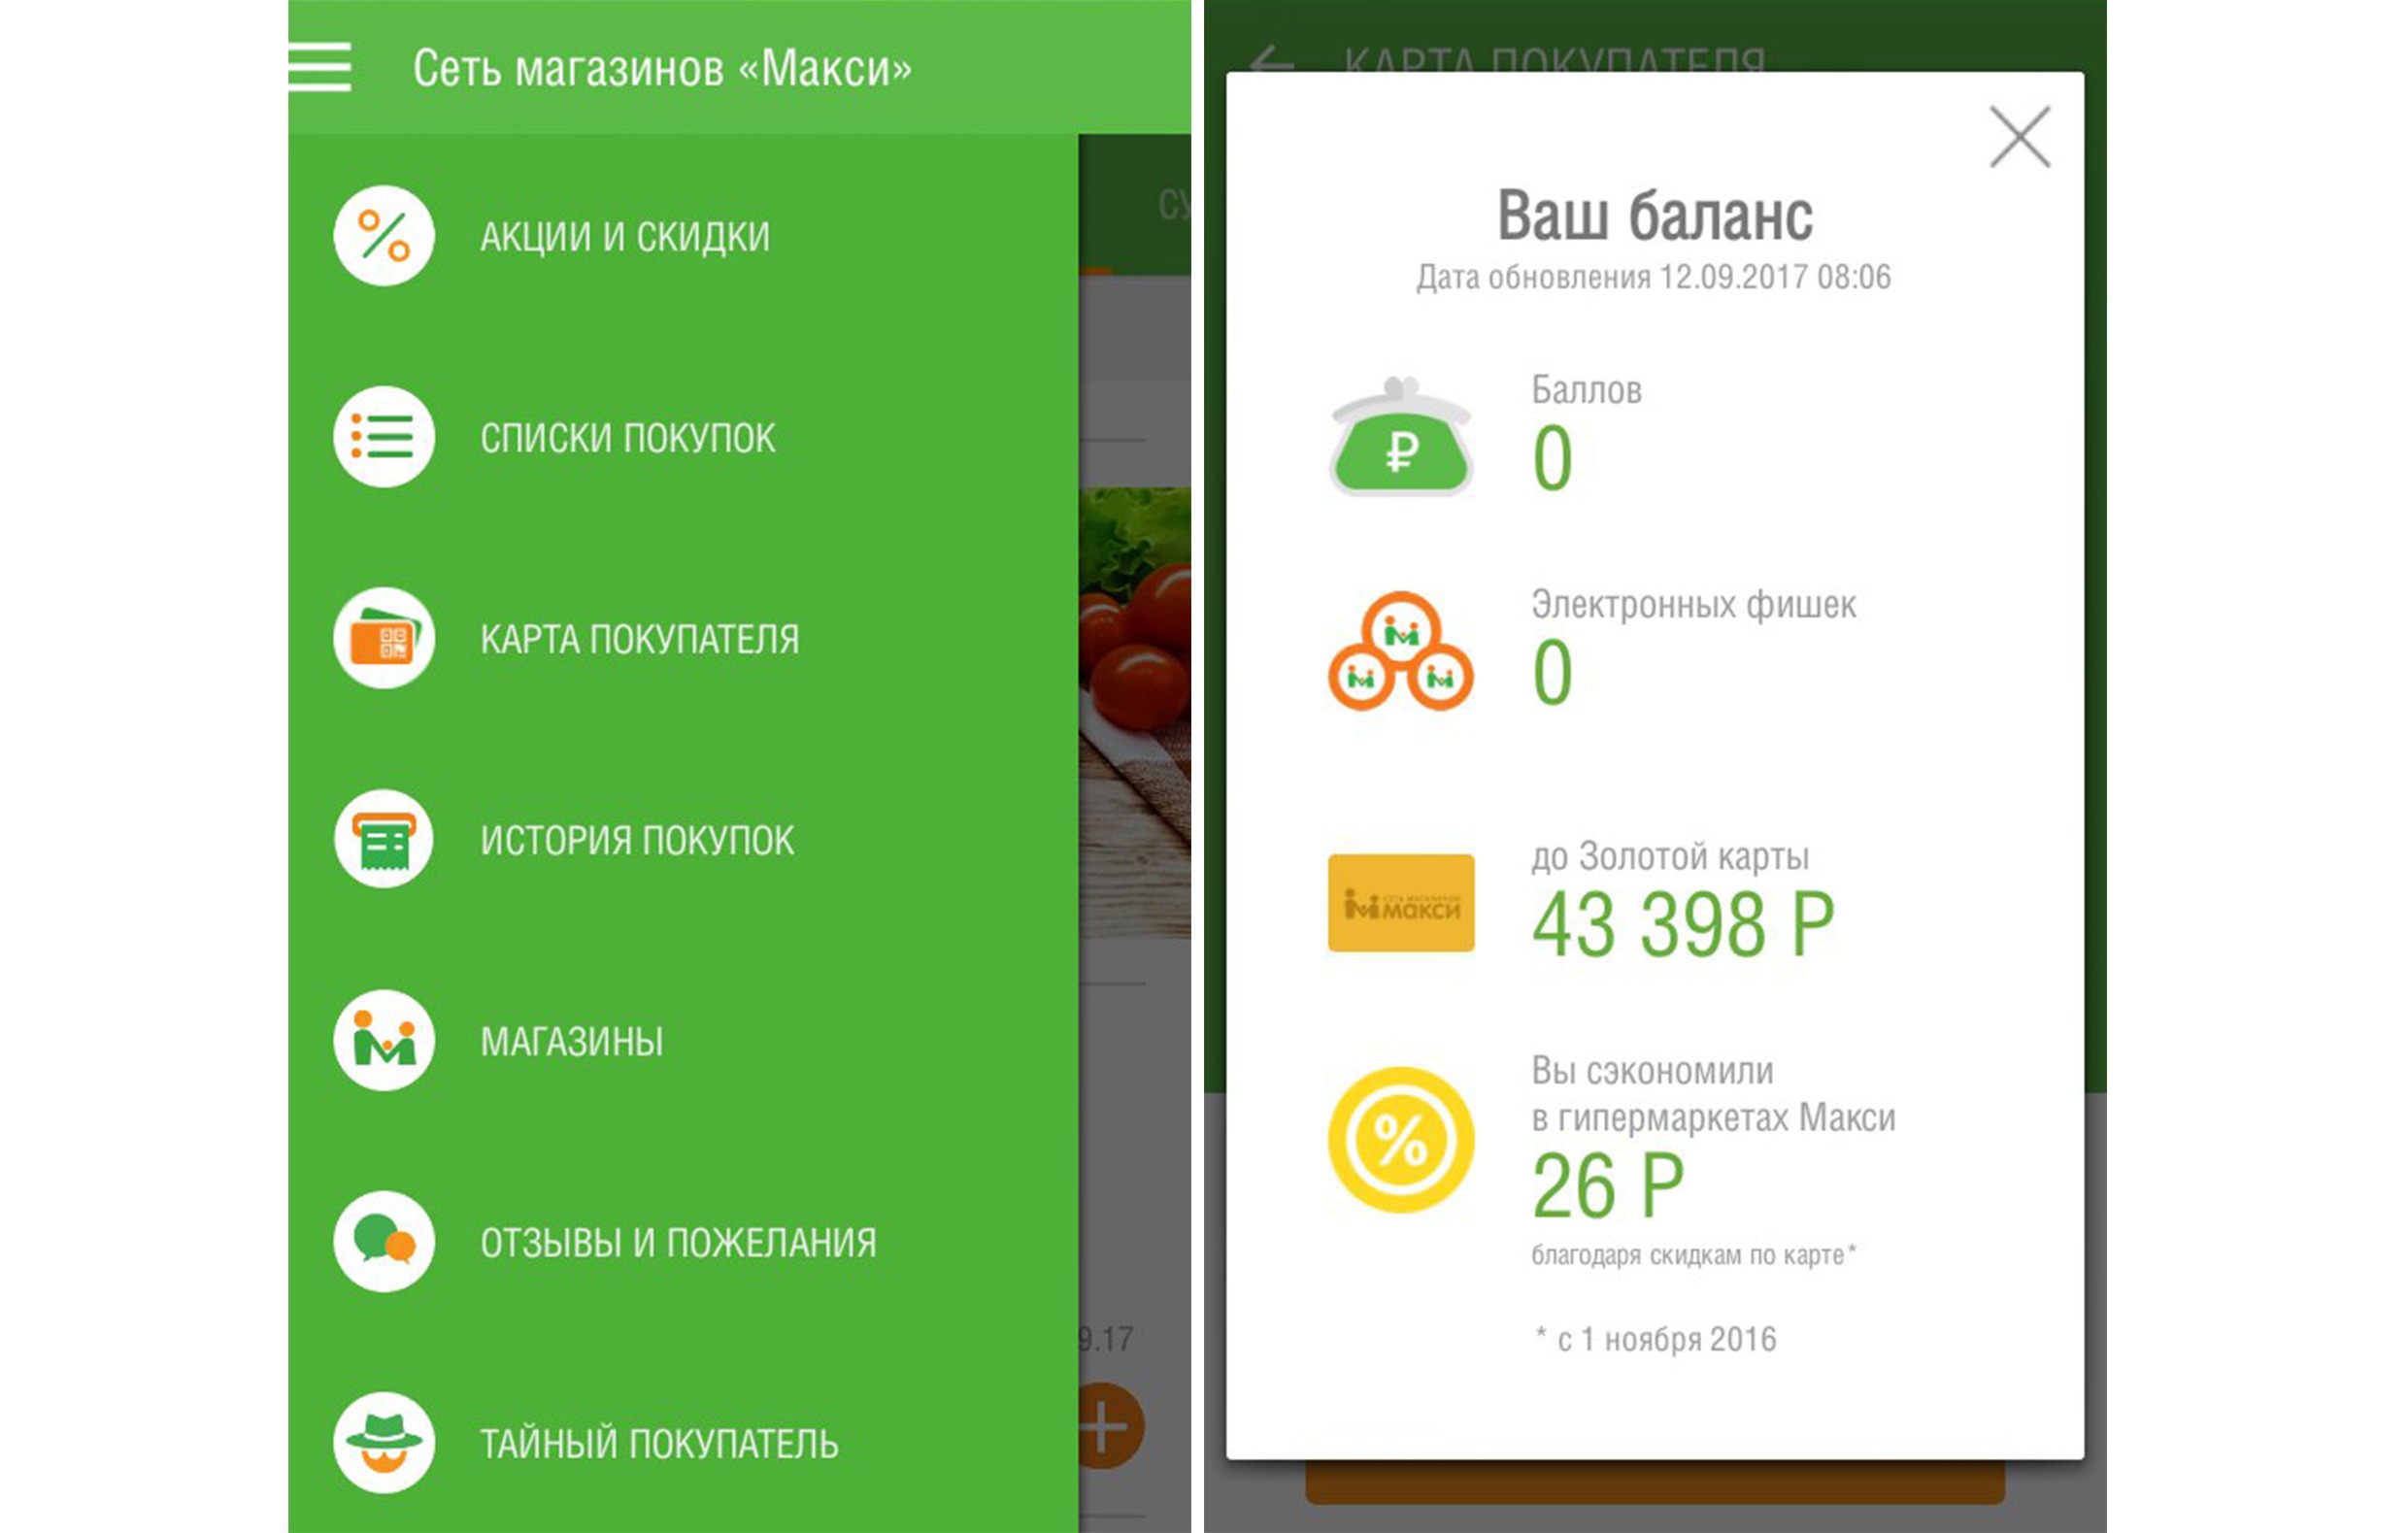 Регіональна мережа «Максі», представлена в Вологодської і Архангельської областях 4 гіпермаркетами та 15 продовольчими супермаркетами, в своєму додатку реалізувала деякі функції навіть краще федеральних компаній